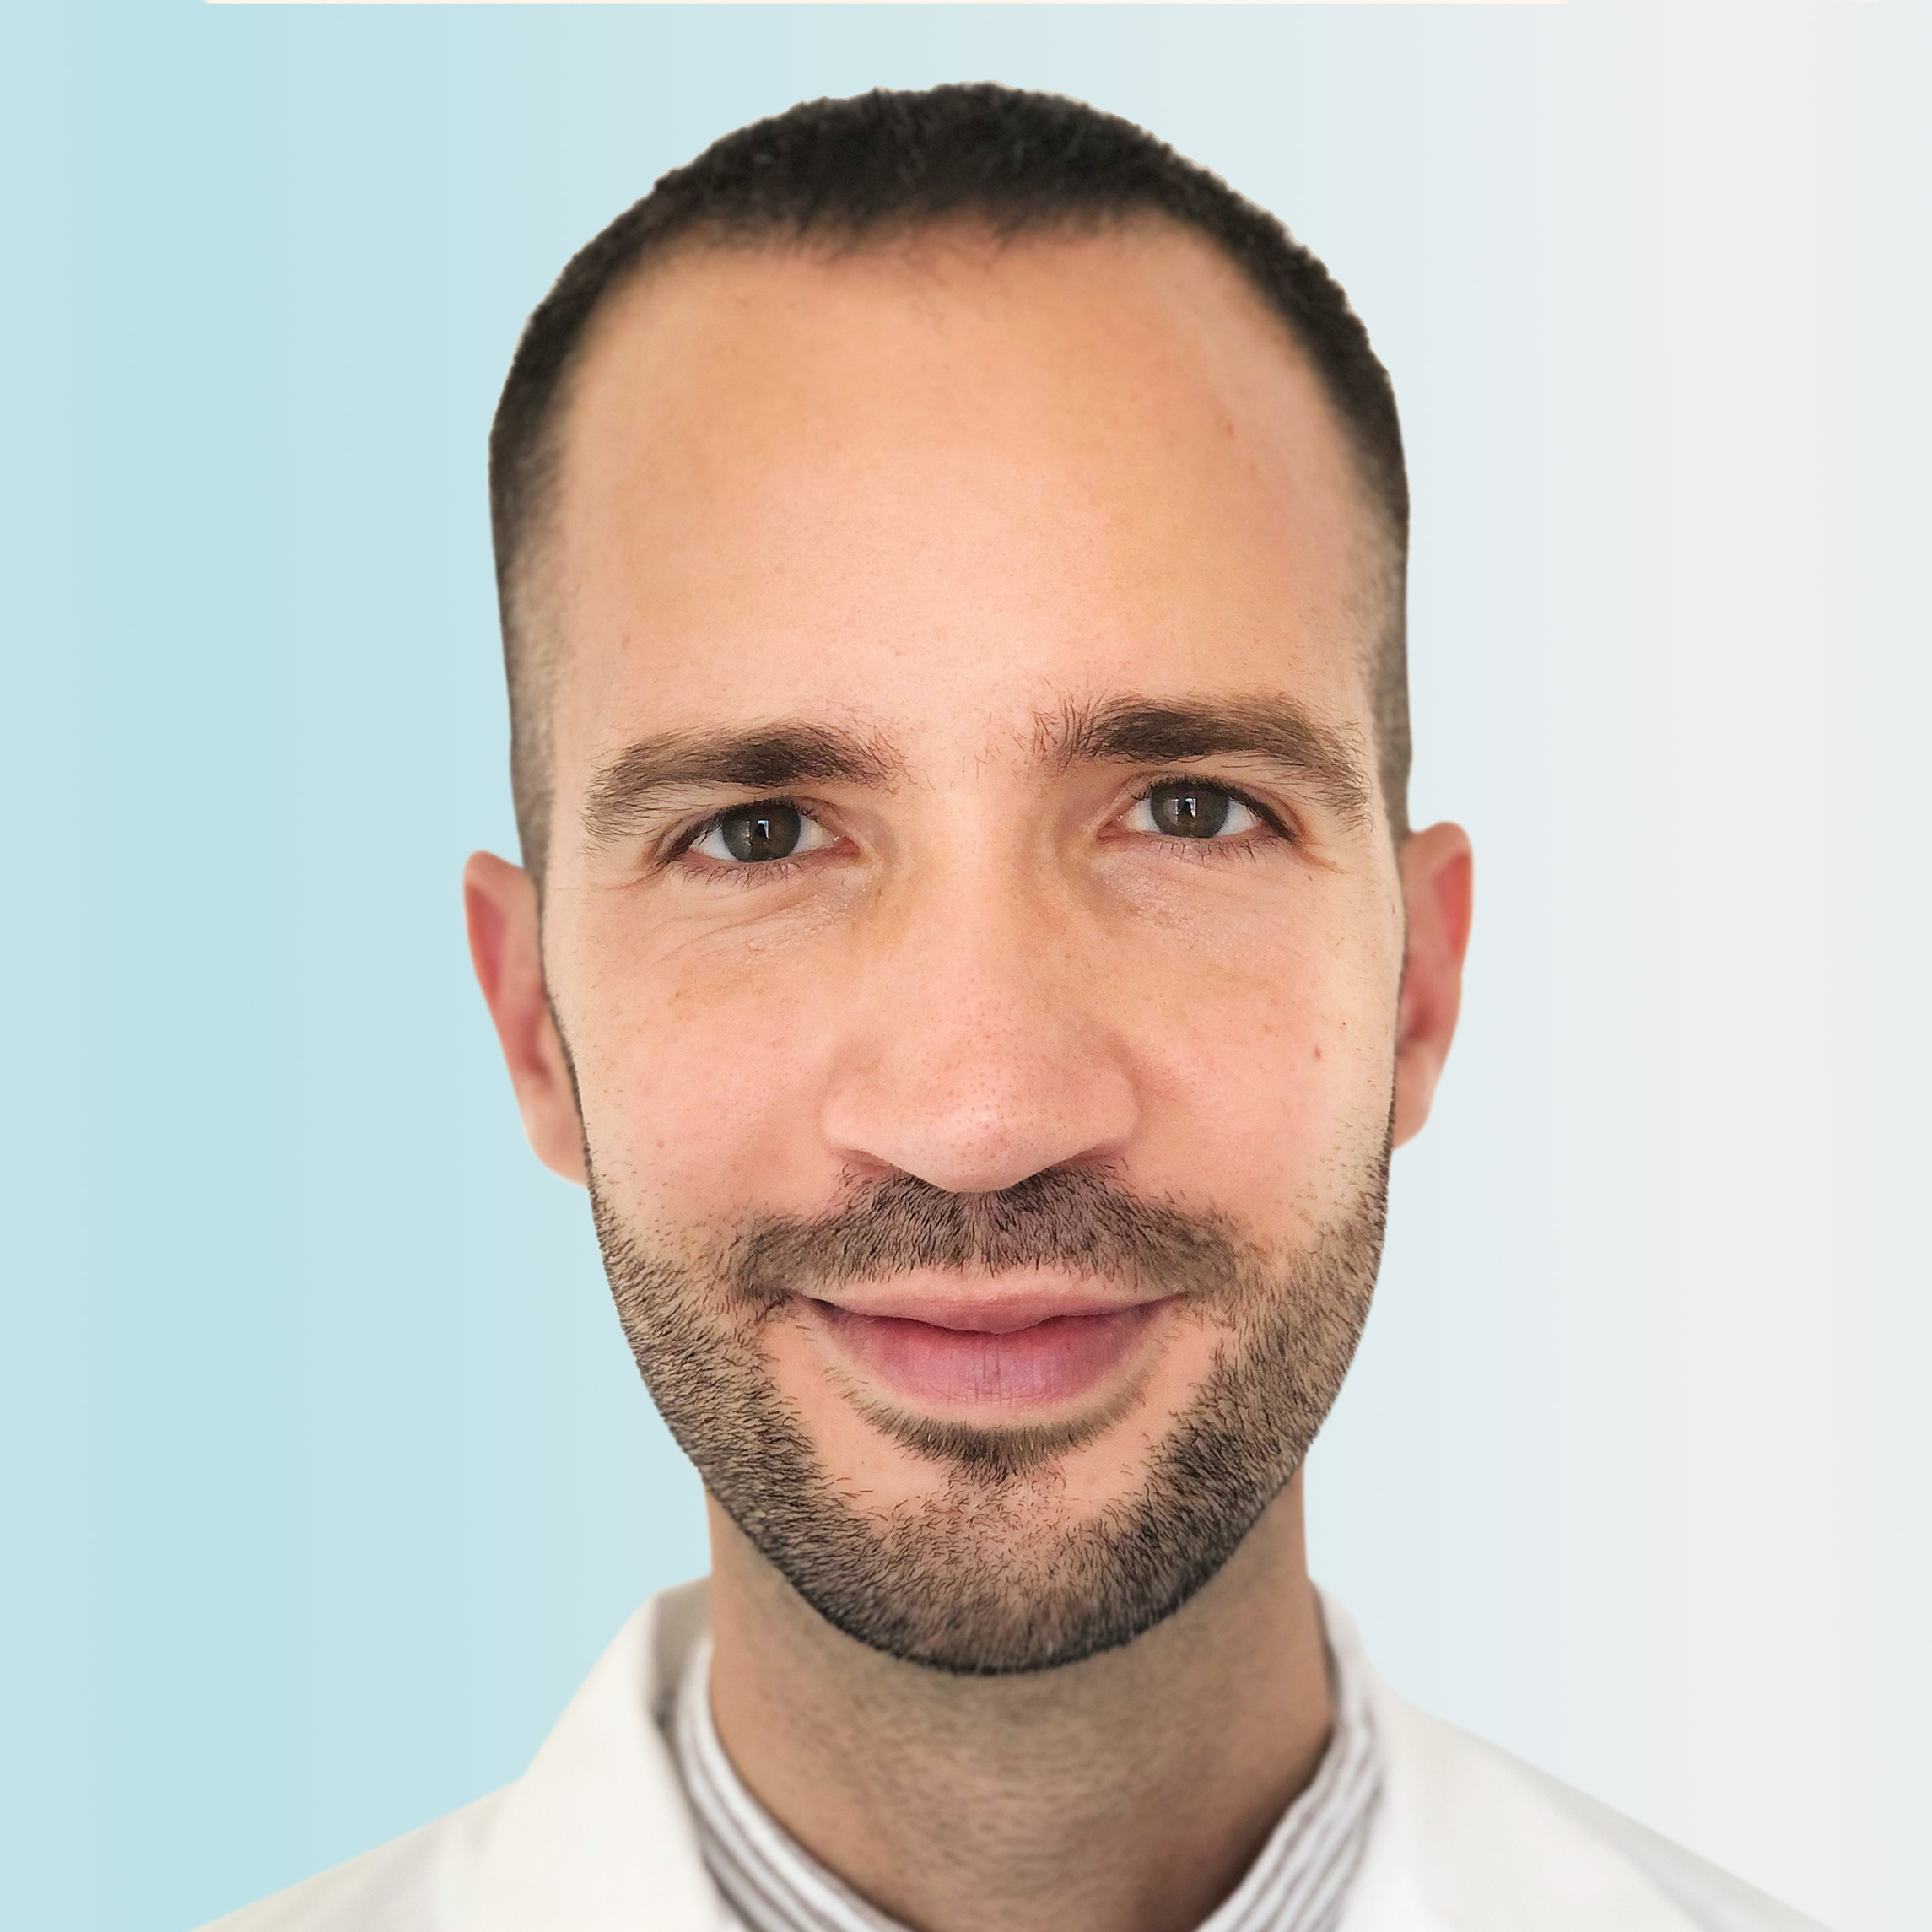 Dermatologo, Dr. Lorenzo Grizzetti